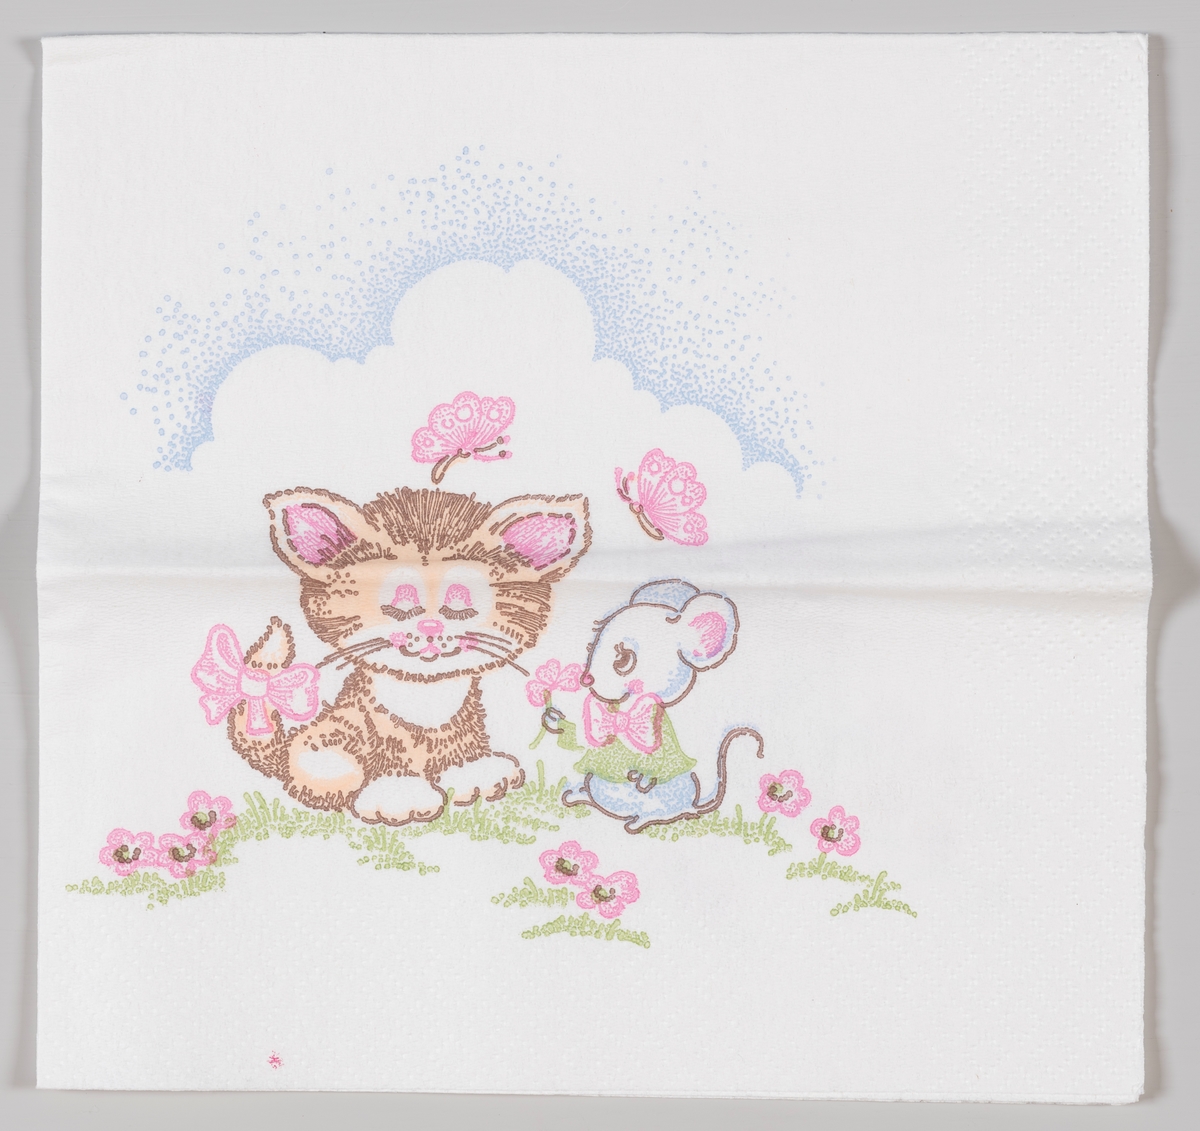 En katt og en muse sitter sammen blant blomster og sommerfugler.